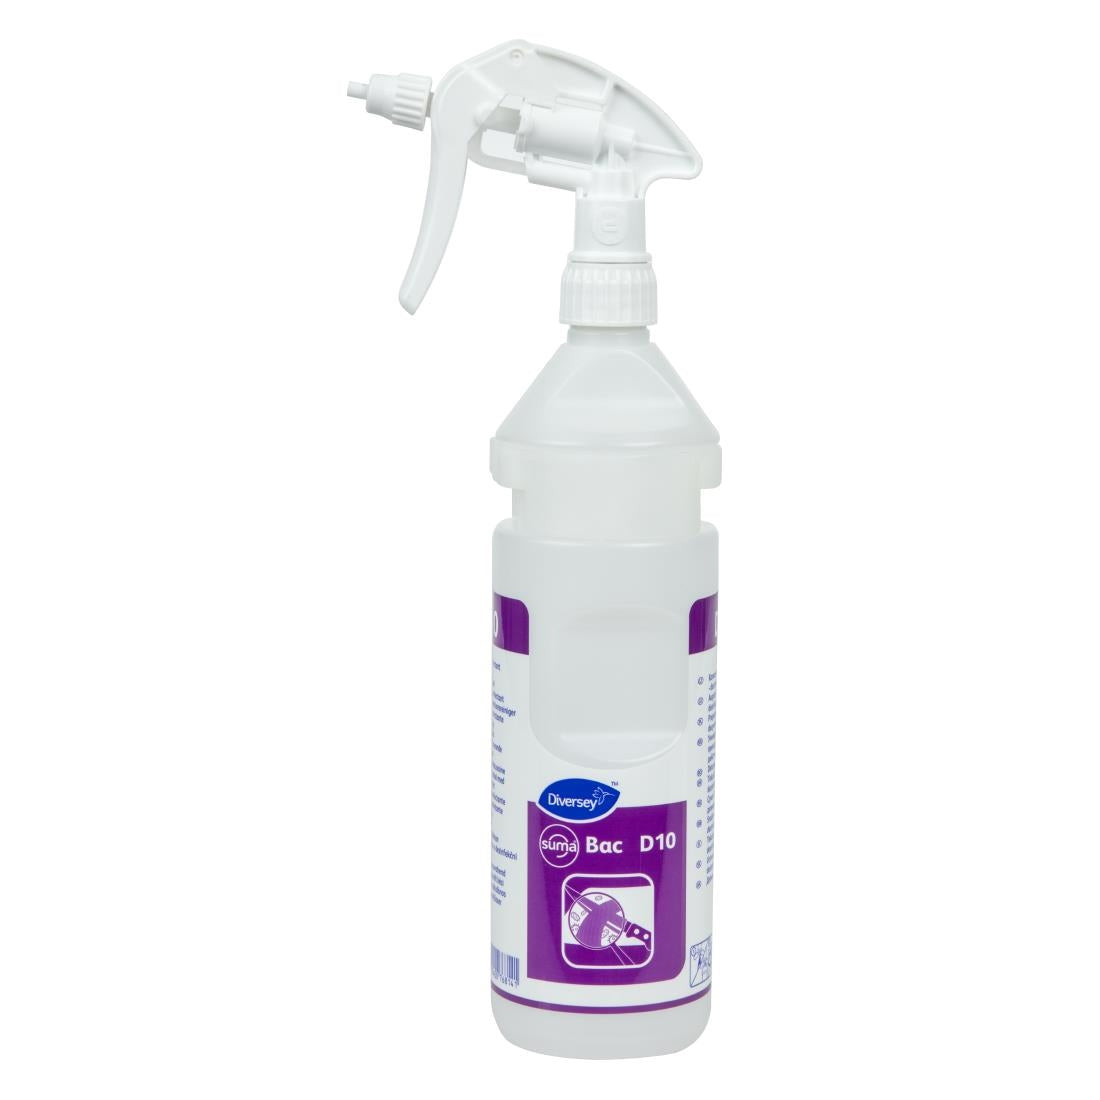 CC116 Suma D10 Cleaner and Sanitiser Refill Bottles 750ml (2 Pack)